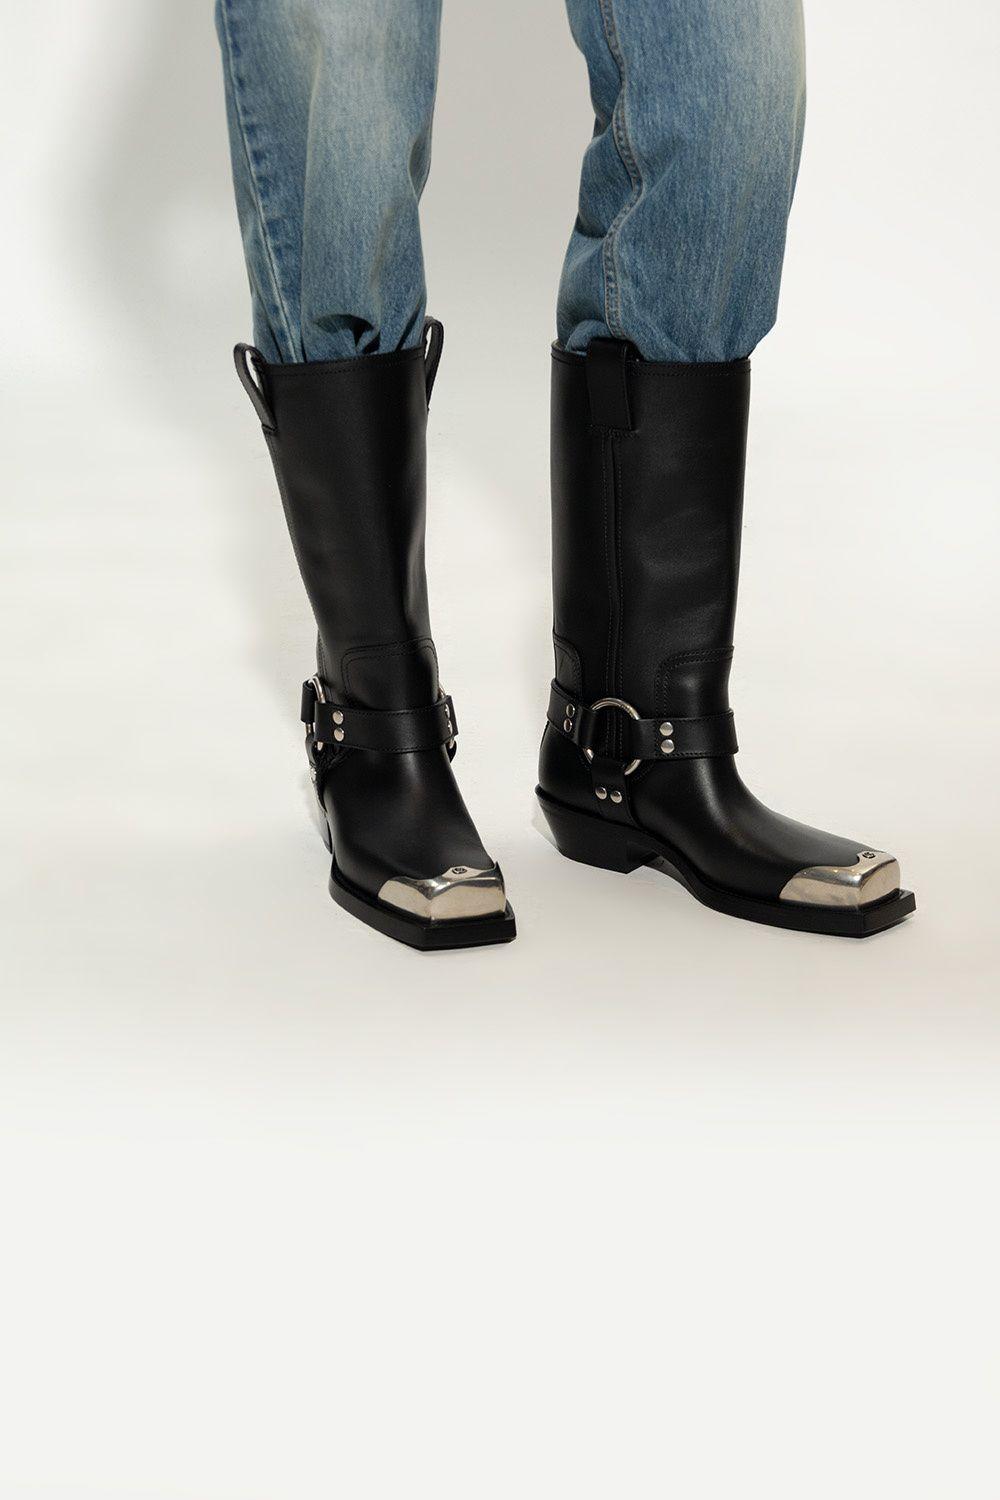 Gucci Men's Plain Leather Boots